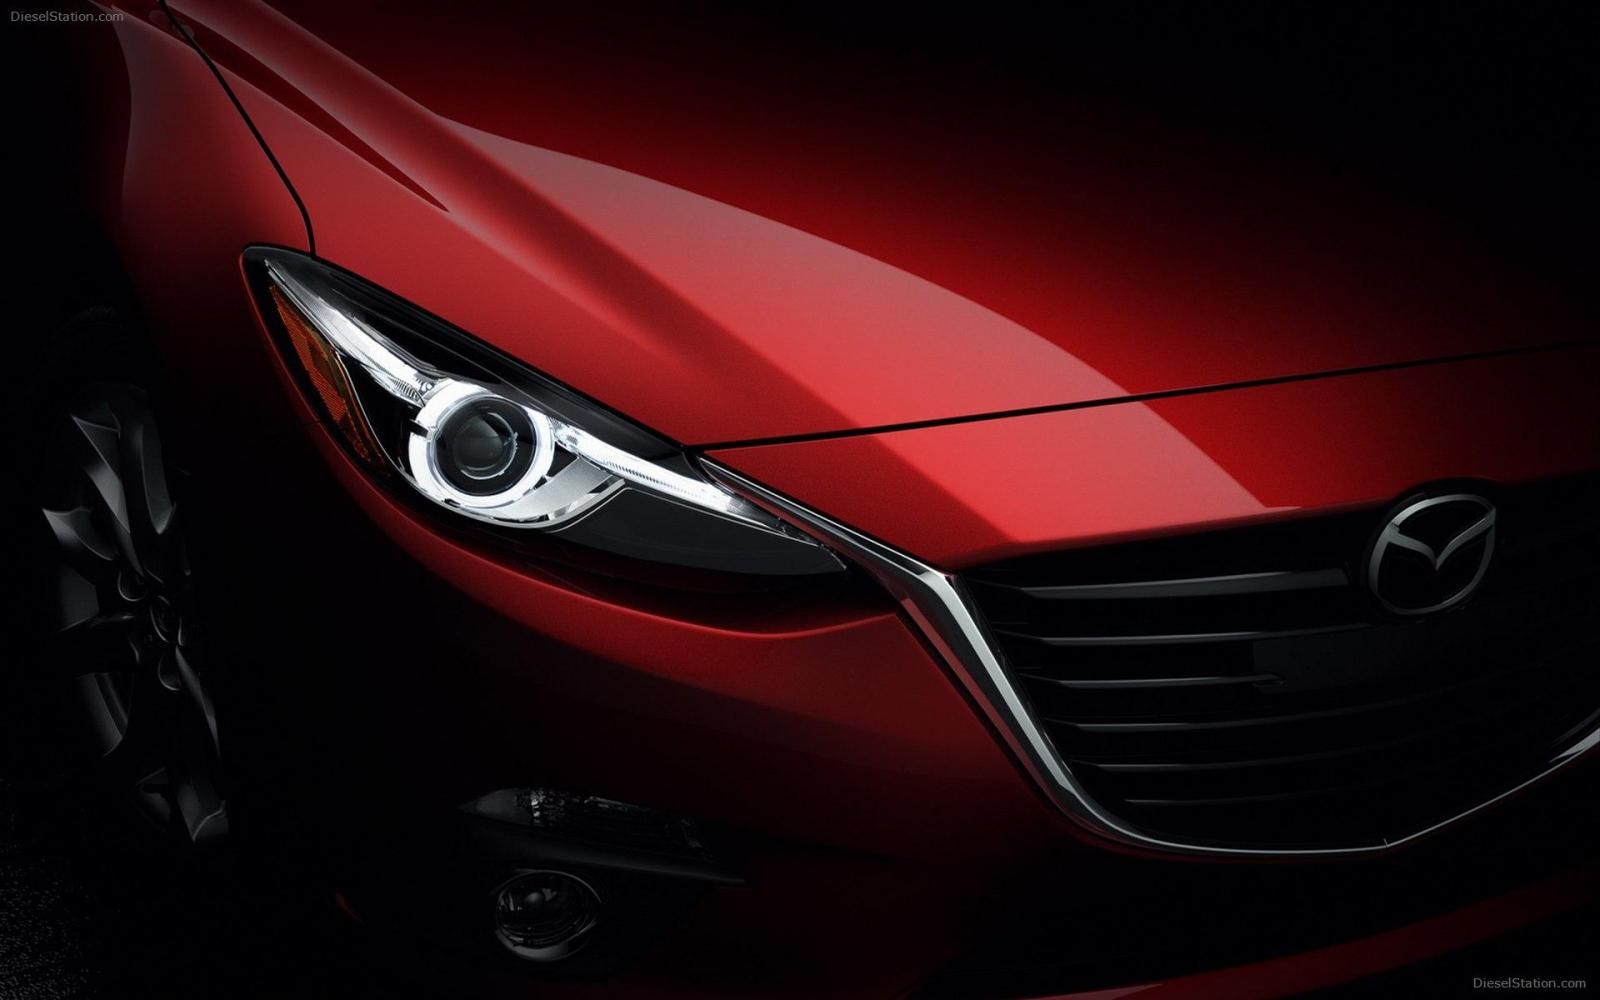 Mazda 3 1.5 Luxury 2019 2019 - Cần bán nhanh chiếc Mazda 3 1.5 Luxury 2019 đời 2019, màu đỏ - Giá cạnh tranh nhất thị trường